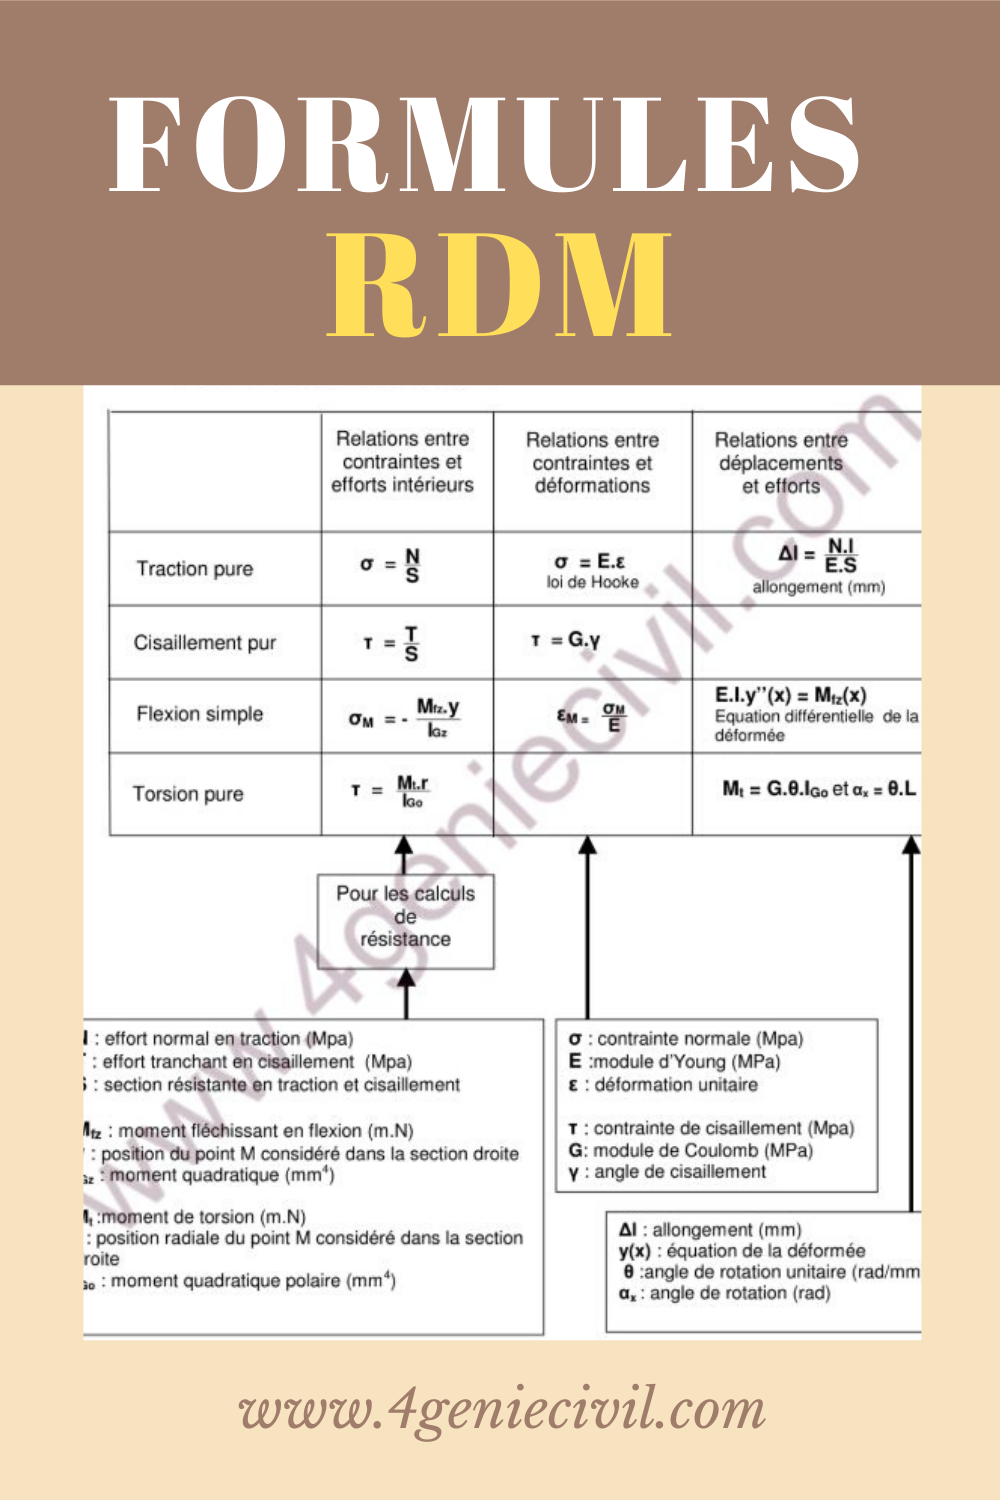 Une page résumant toutes les formules RDM les plus utilisés à télécharger en version pdf.